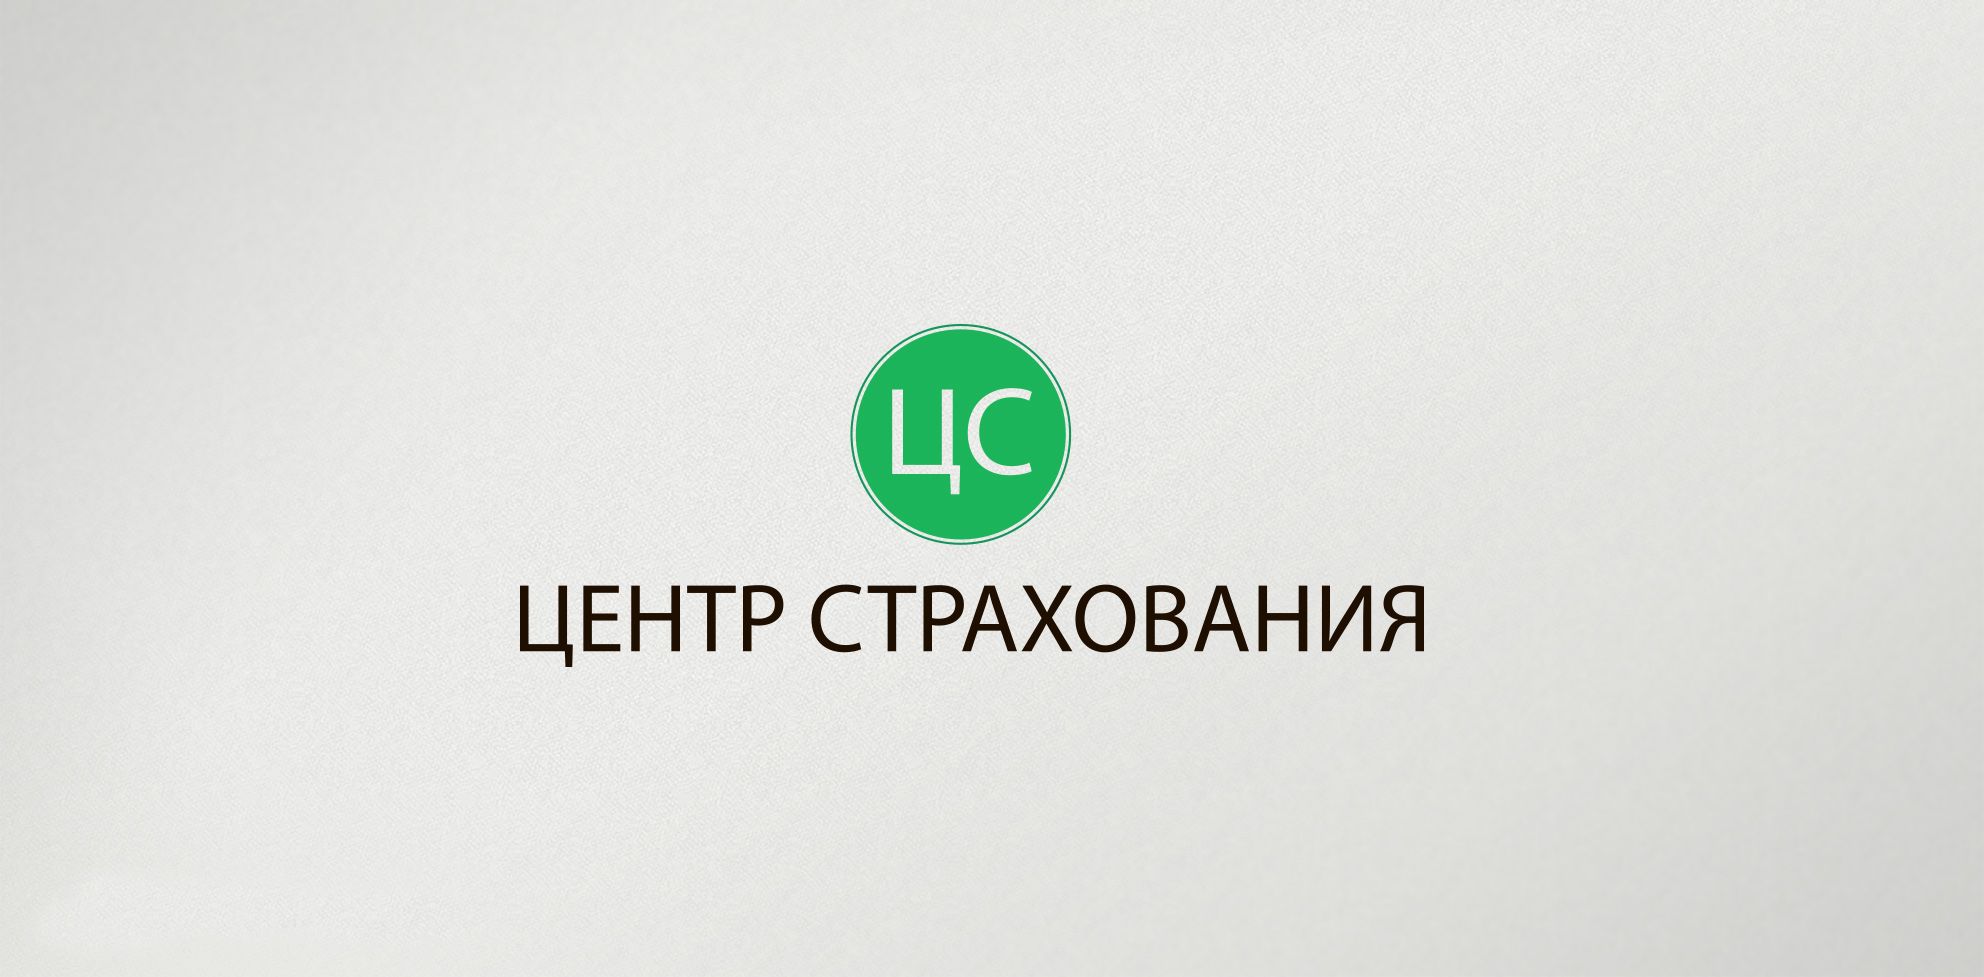 Лого и фирменный стиль для Центр страхования - дизайнер comicdm